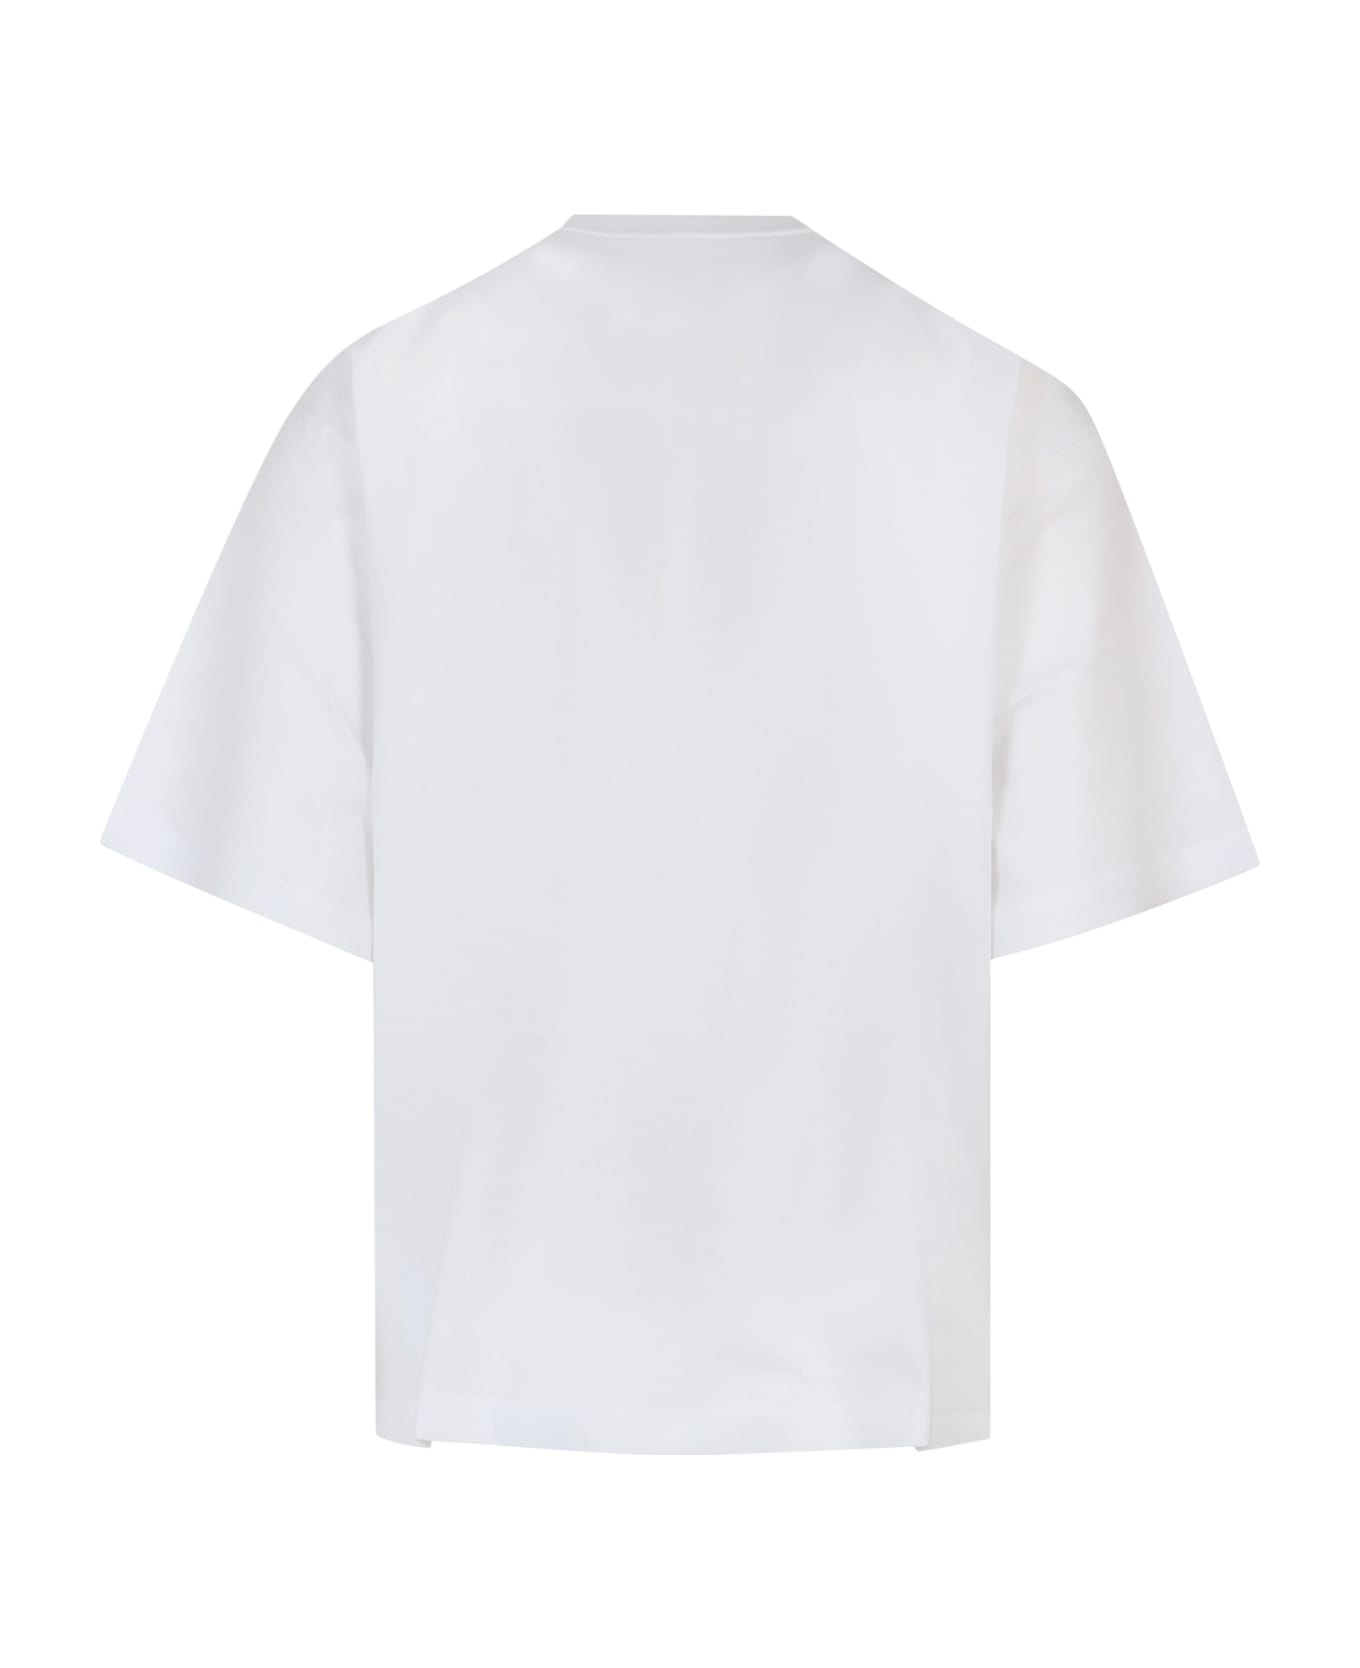 Marni T-shirt - Bianco